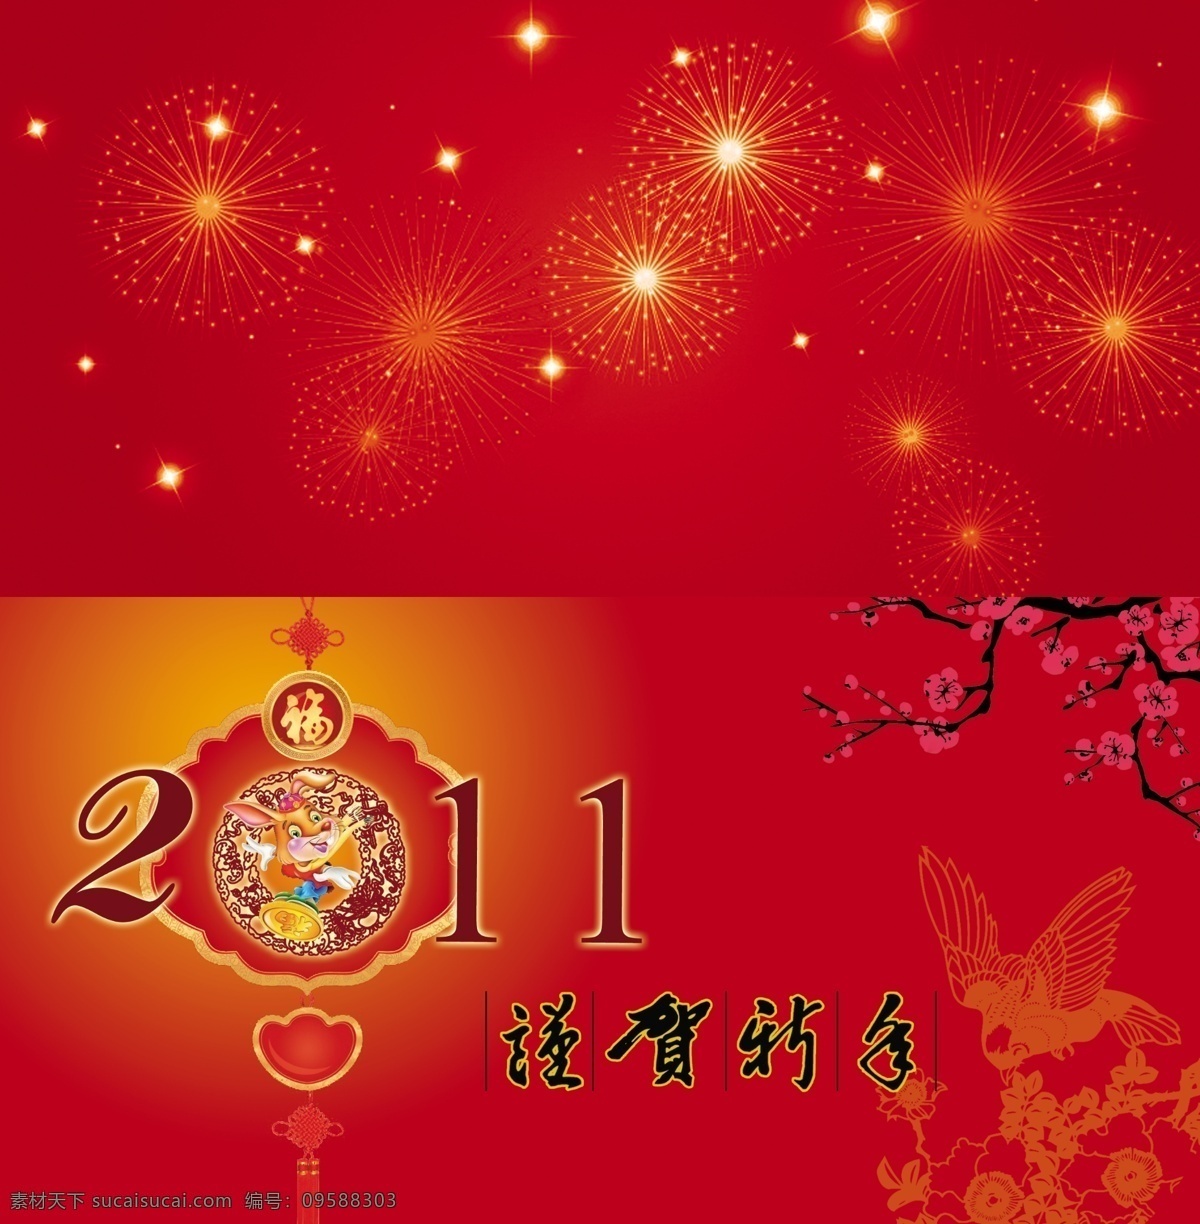 2011 新年贺卡 烟花 兔 梅花 喜庆 节日素材 新春贺卡 新年贺卡模板 星光 psd素材 红色